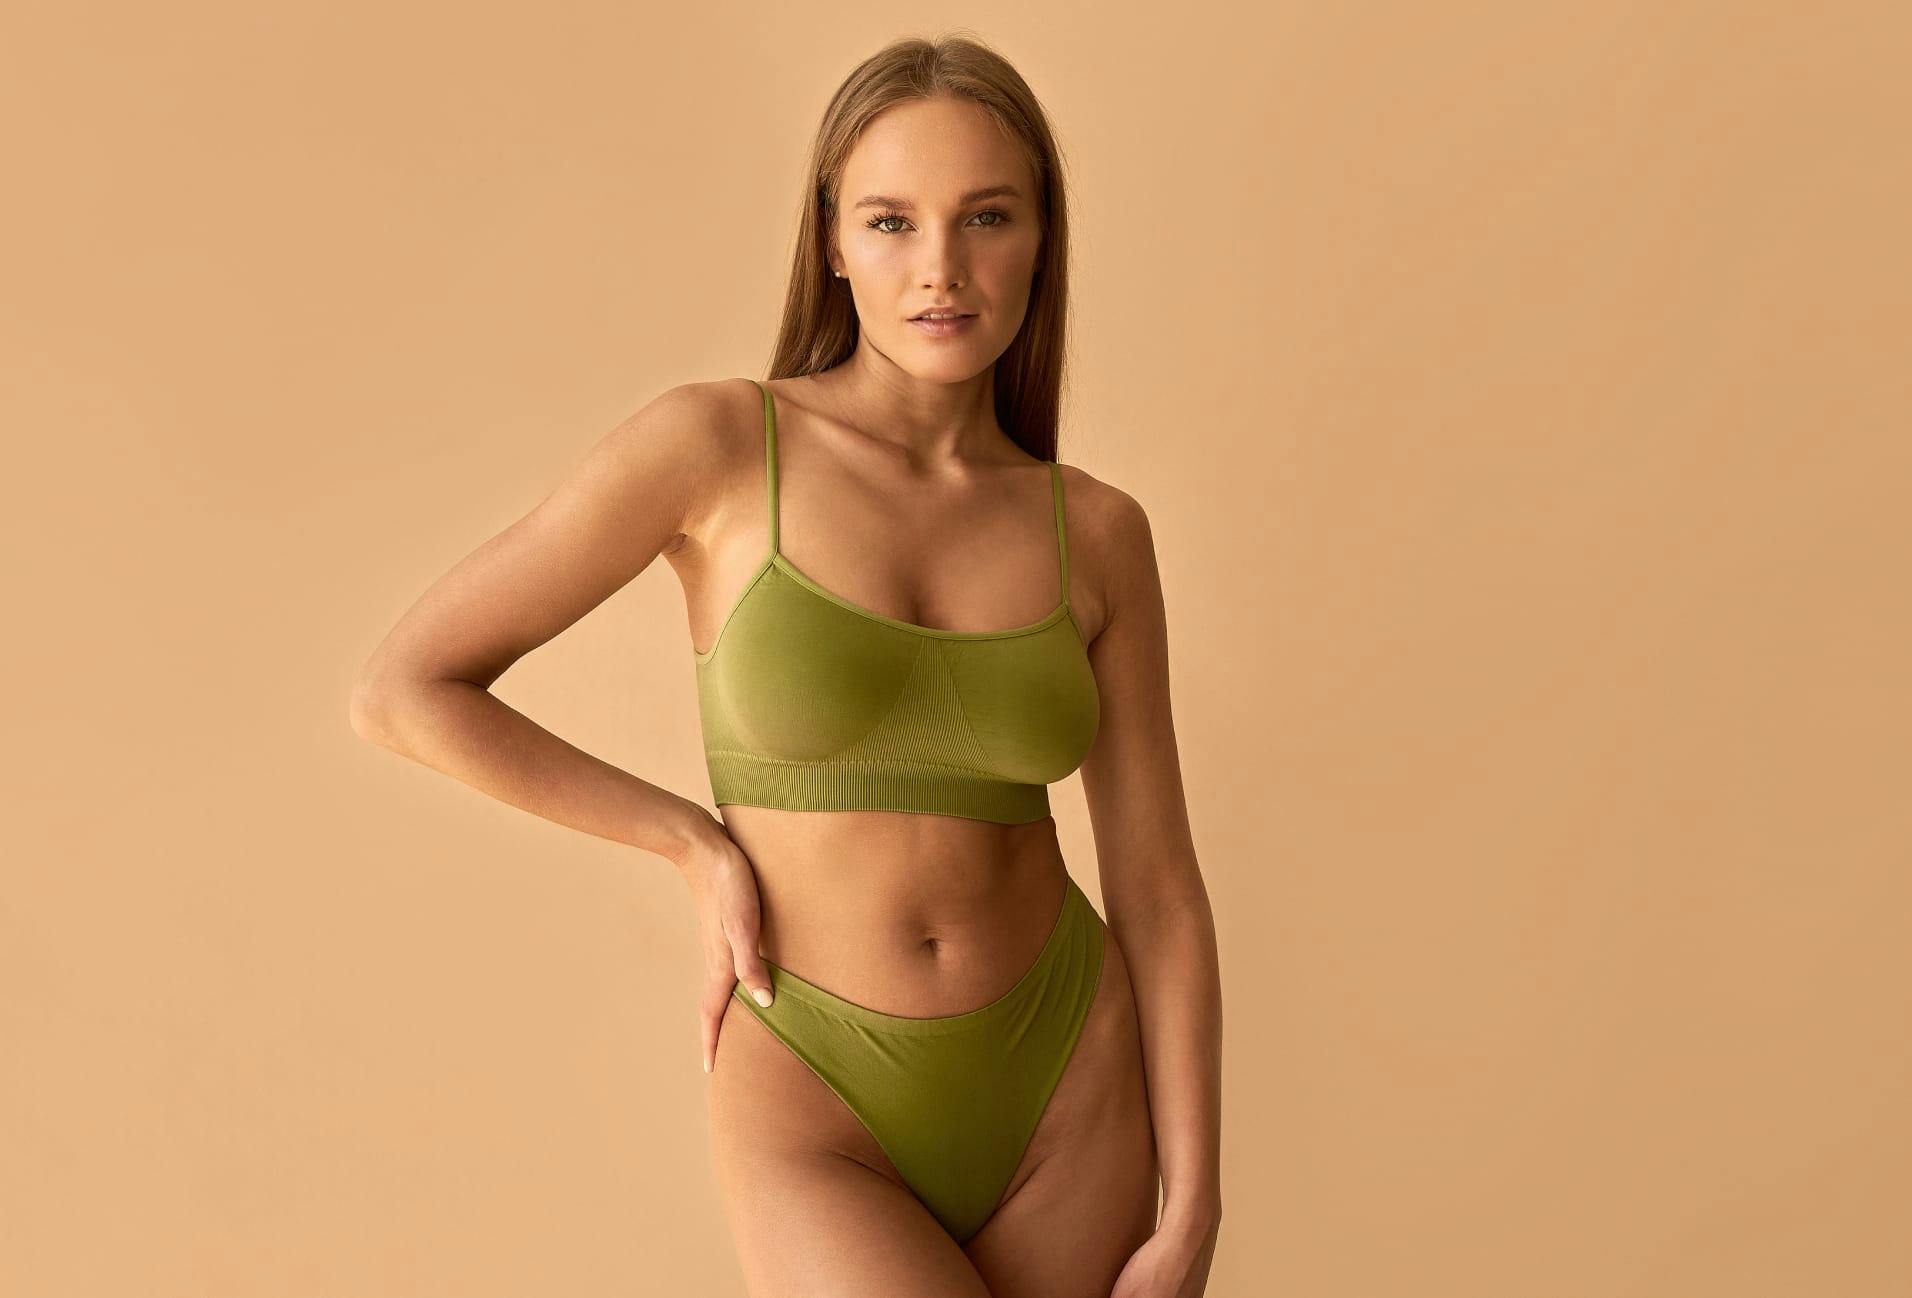 woman in green undergarments